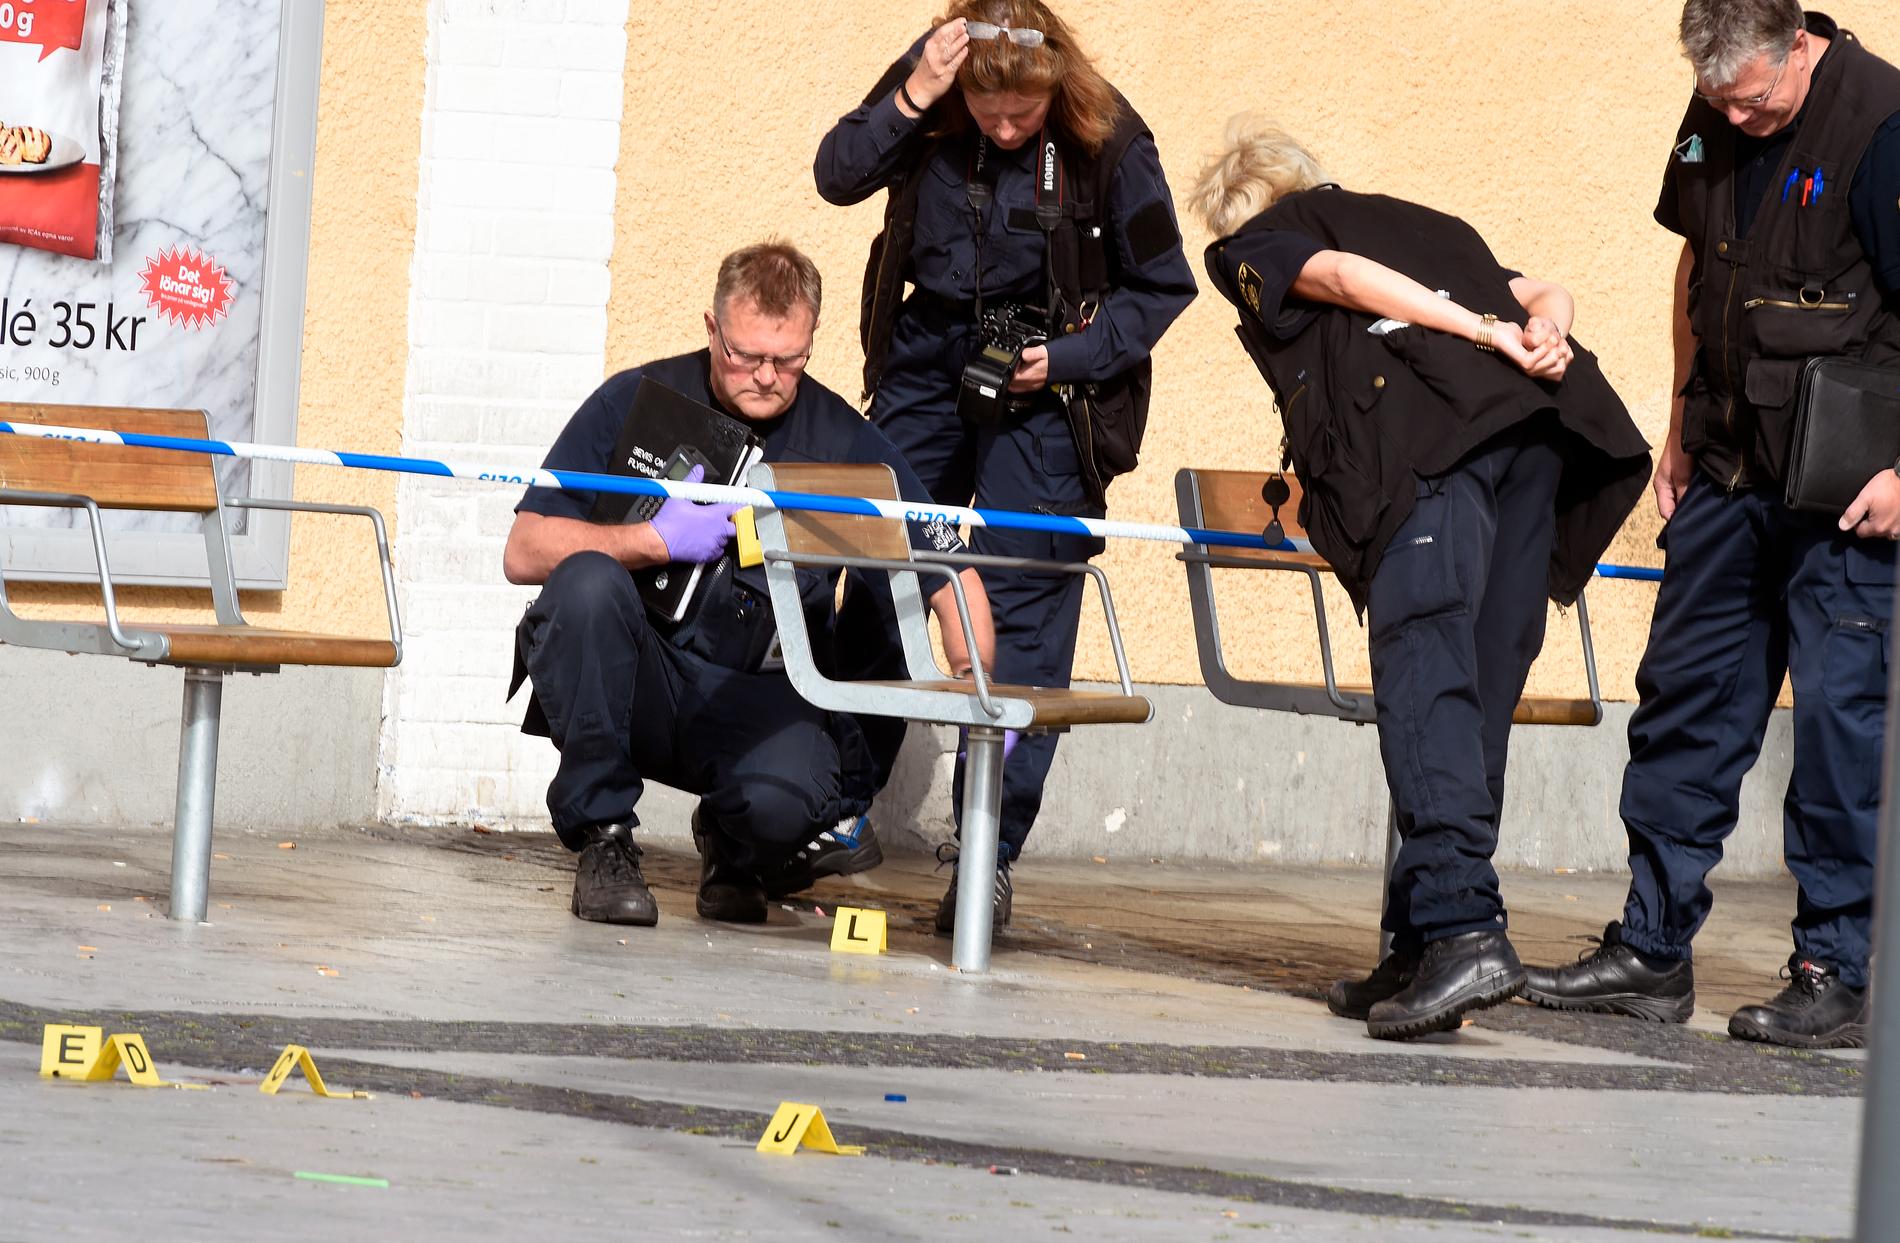 En person sköts till döds på Rinkeby torg.